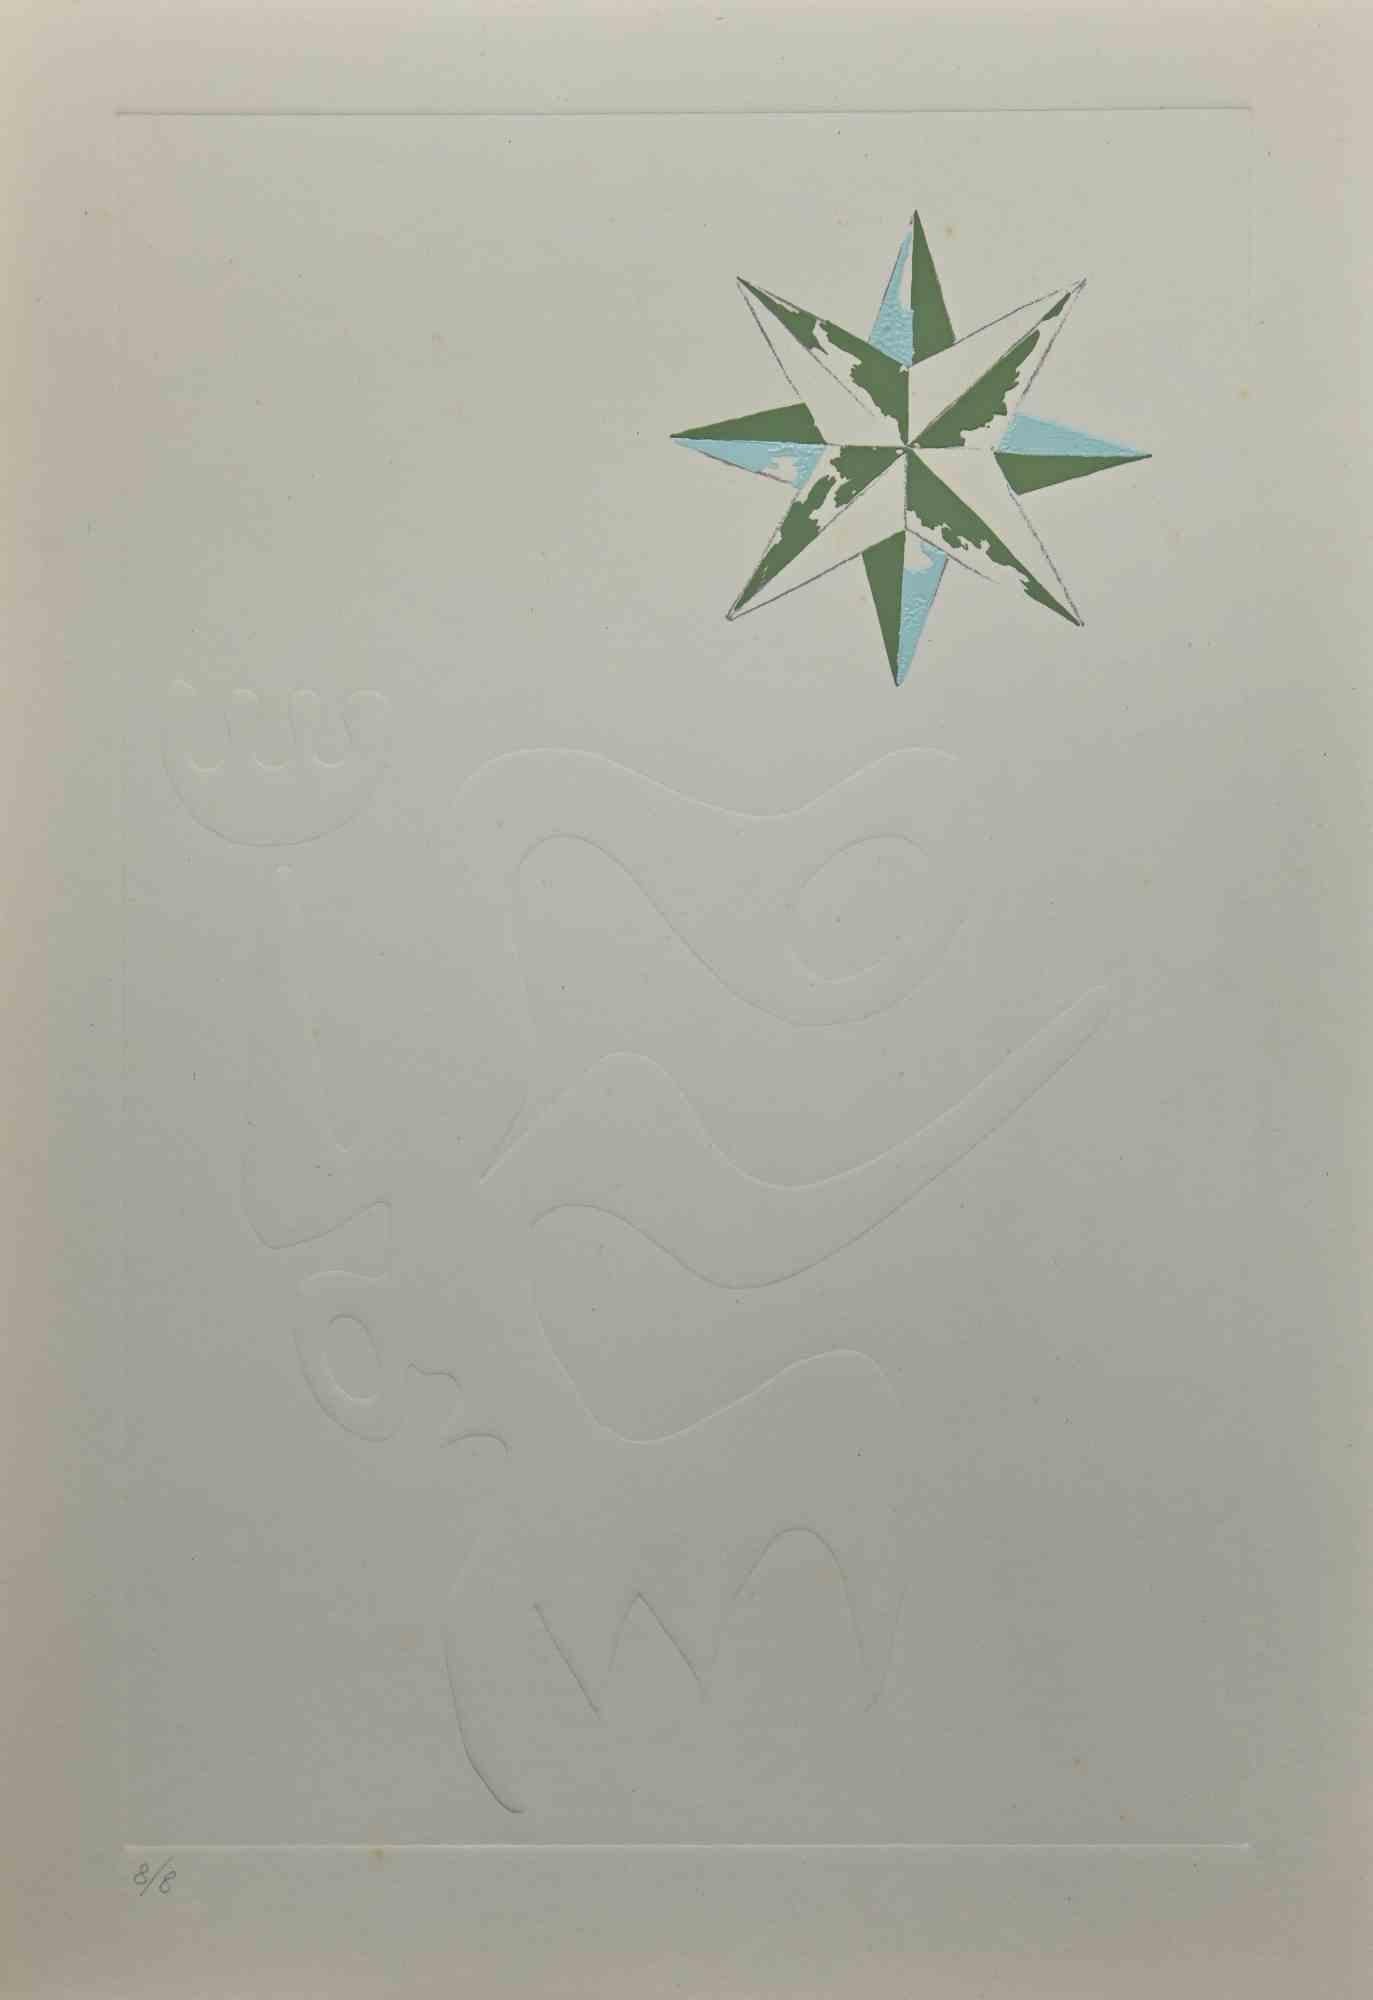 Wind Rose ist ein Original-Siebdruck und eine Prägung von Leo Guida aus den 1970er Jahren.

Guter Zustand, keine Signatur.

Als Künstler, der ein Gespür für aktuelle Themen, künstlerische Strömungen und historische Techniken hat, konnte Leo Guida